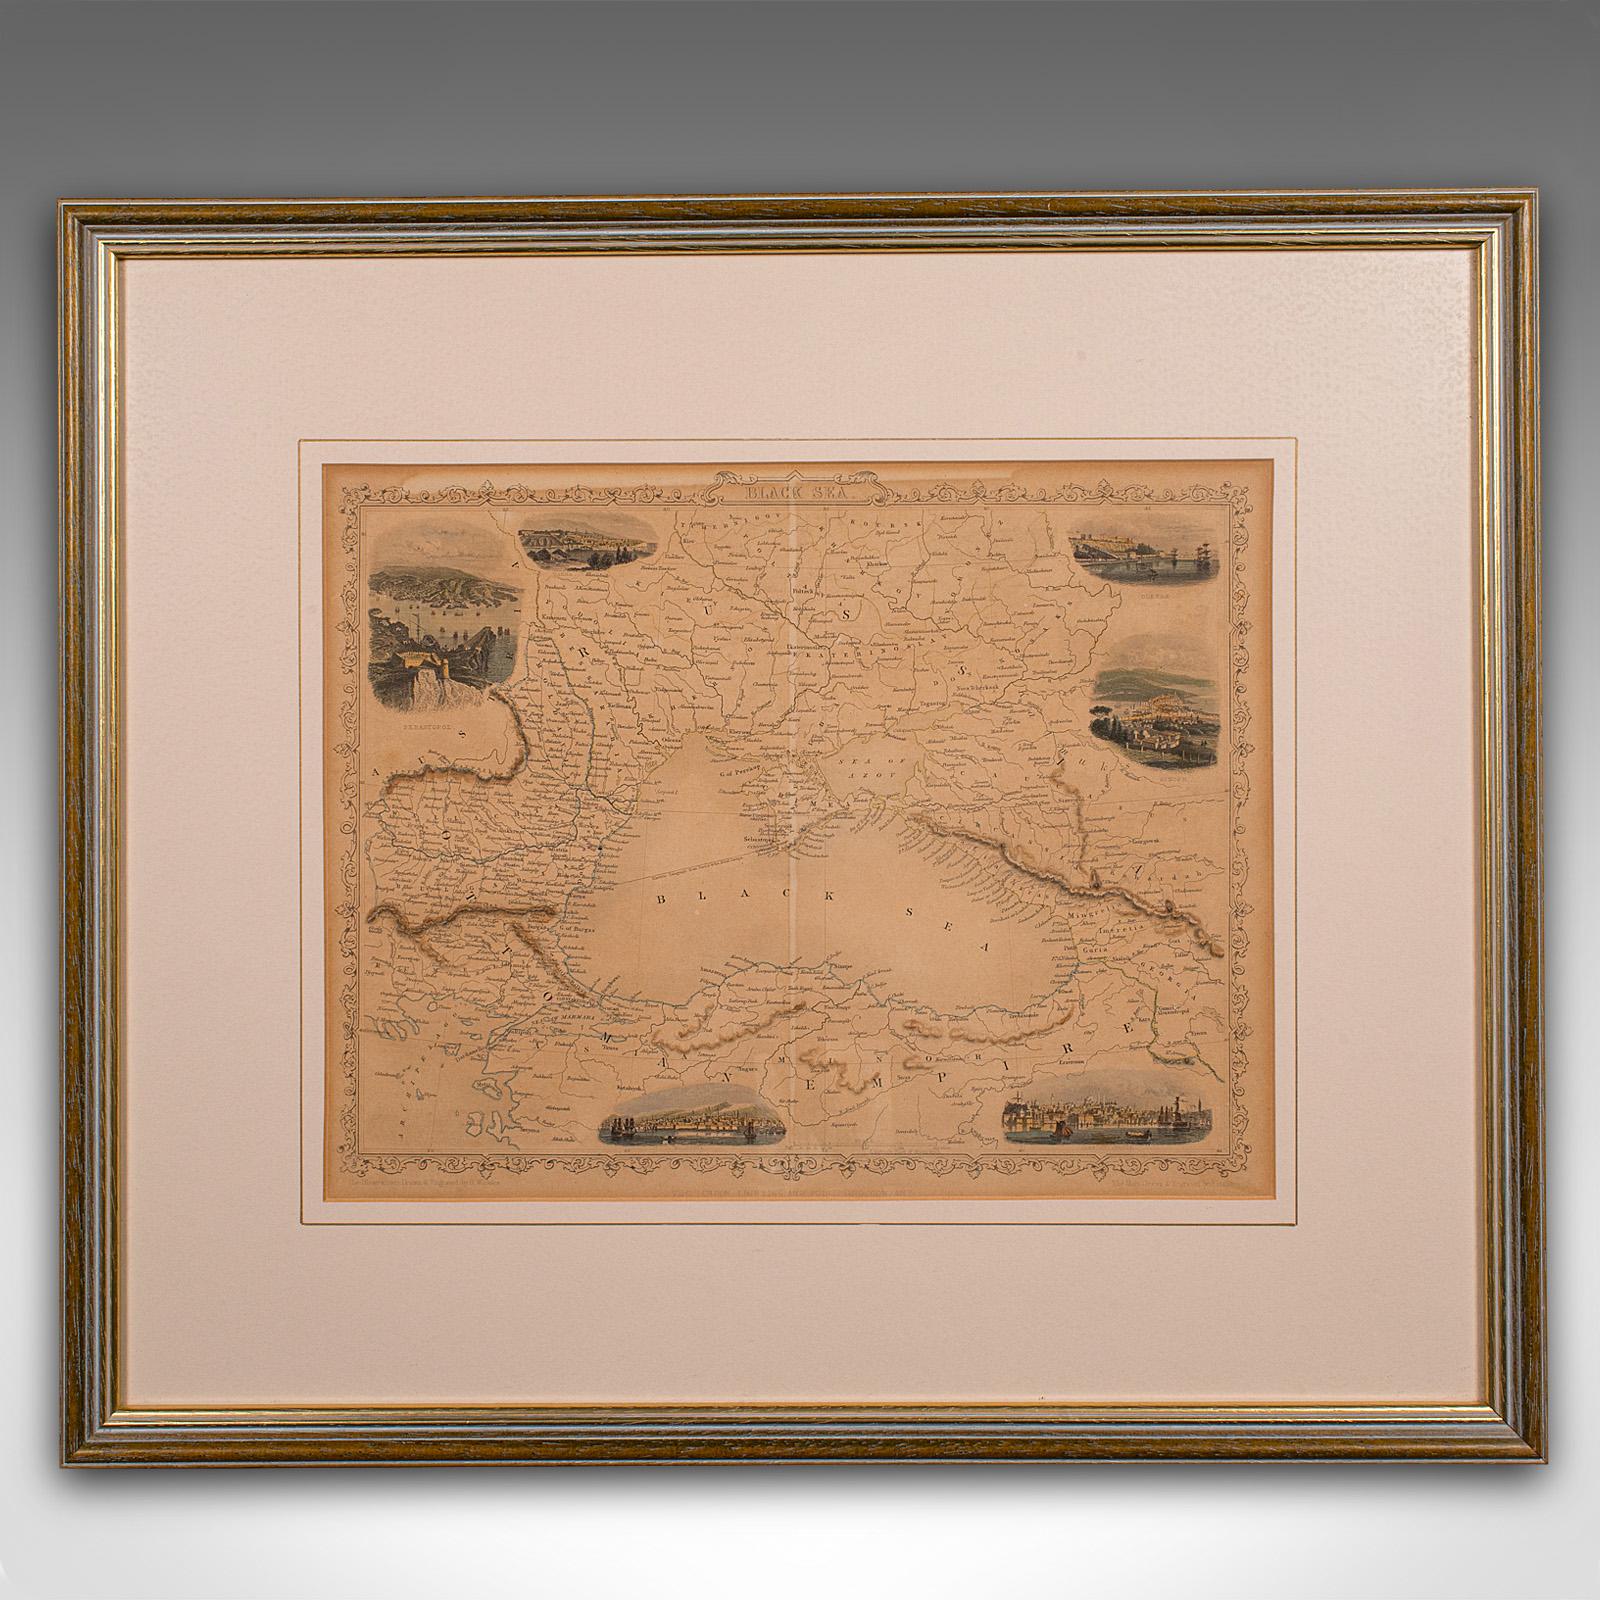 Il s'agit d'une carte lithographique ancienne de la région de la mer Noire. Gravure d'atlas anglaise encadrée d'intérêt cartographique par John Rapkin, datant du début de la période victorienne et plus tard, vers 1850.

John Rapkin était considéré